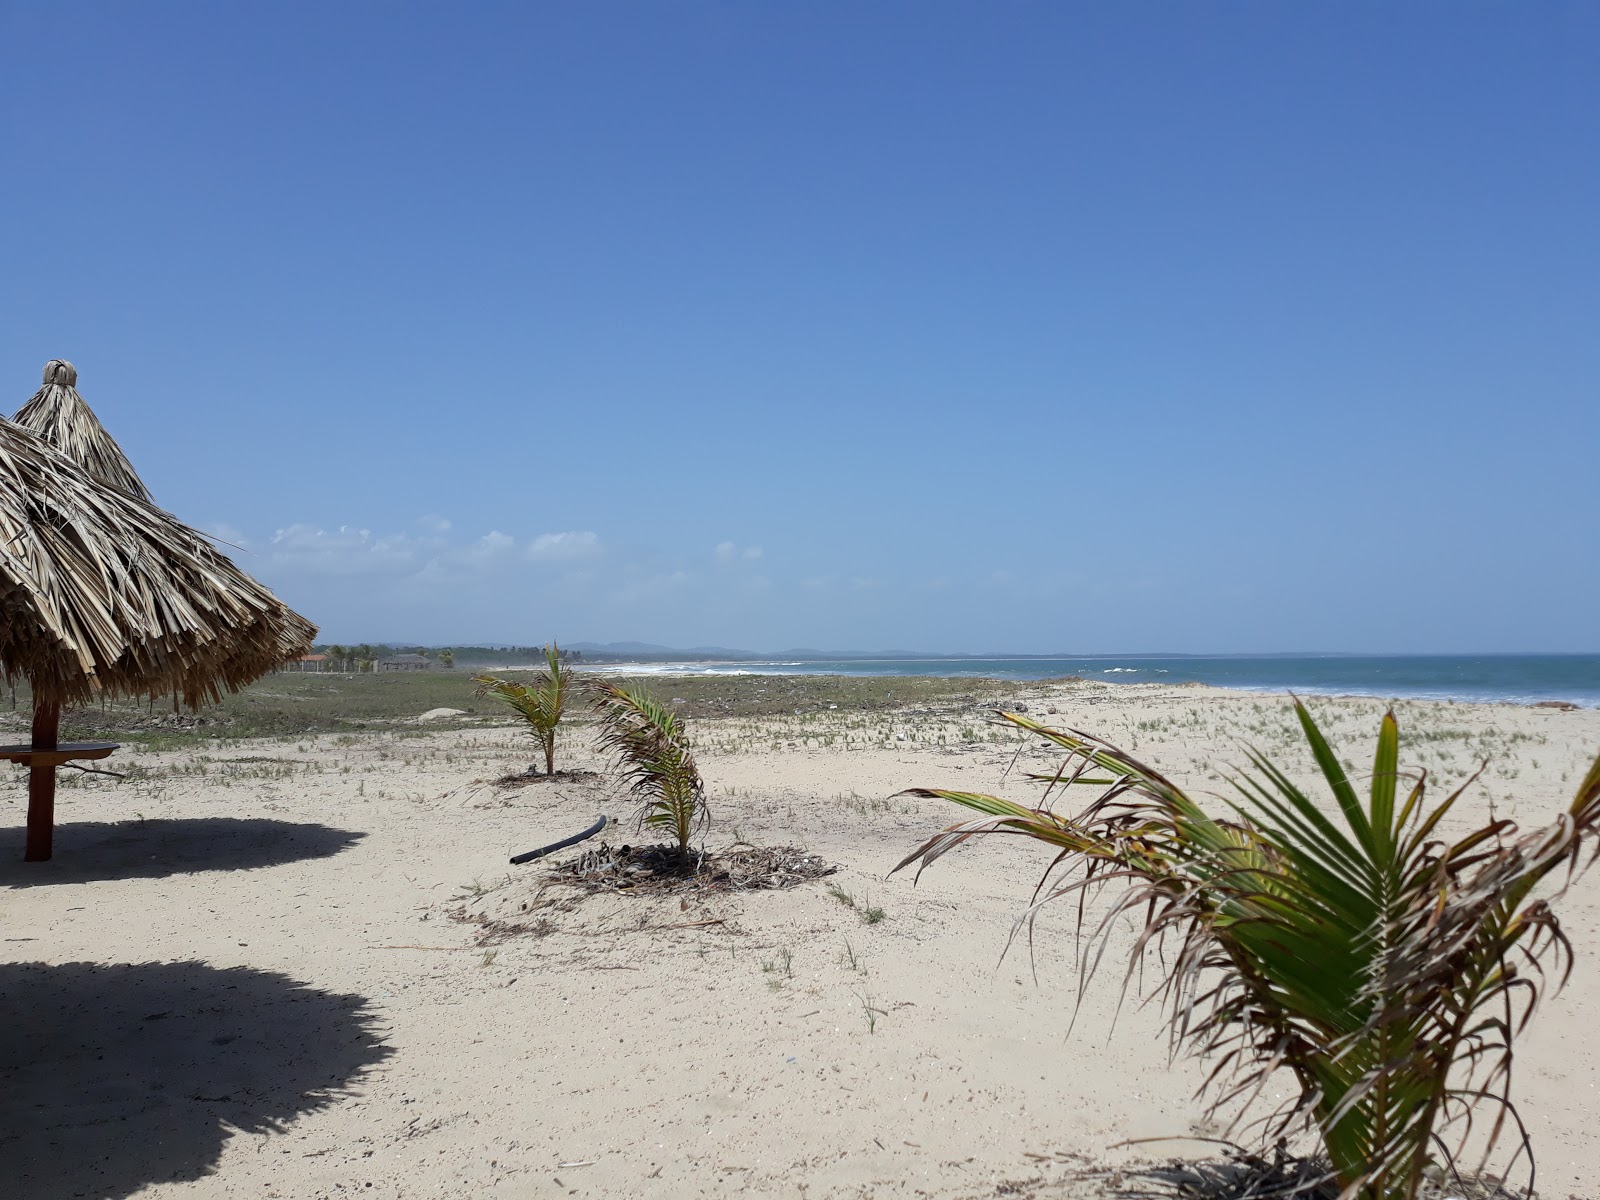 Fotografie cu Playa Azul - locul popular printre cunoscătorii de relaxare